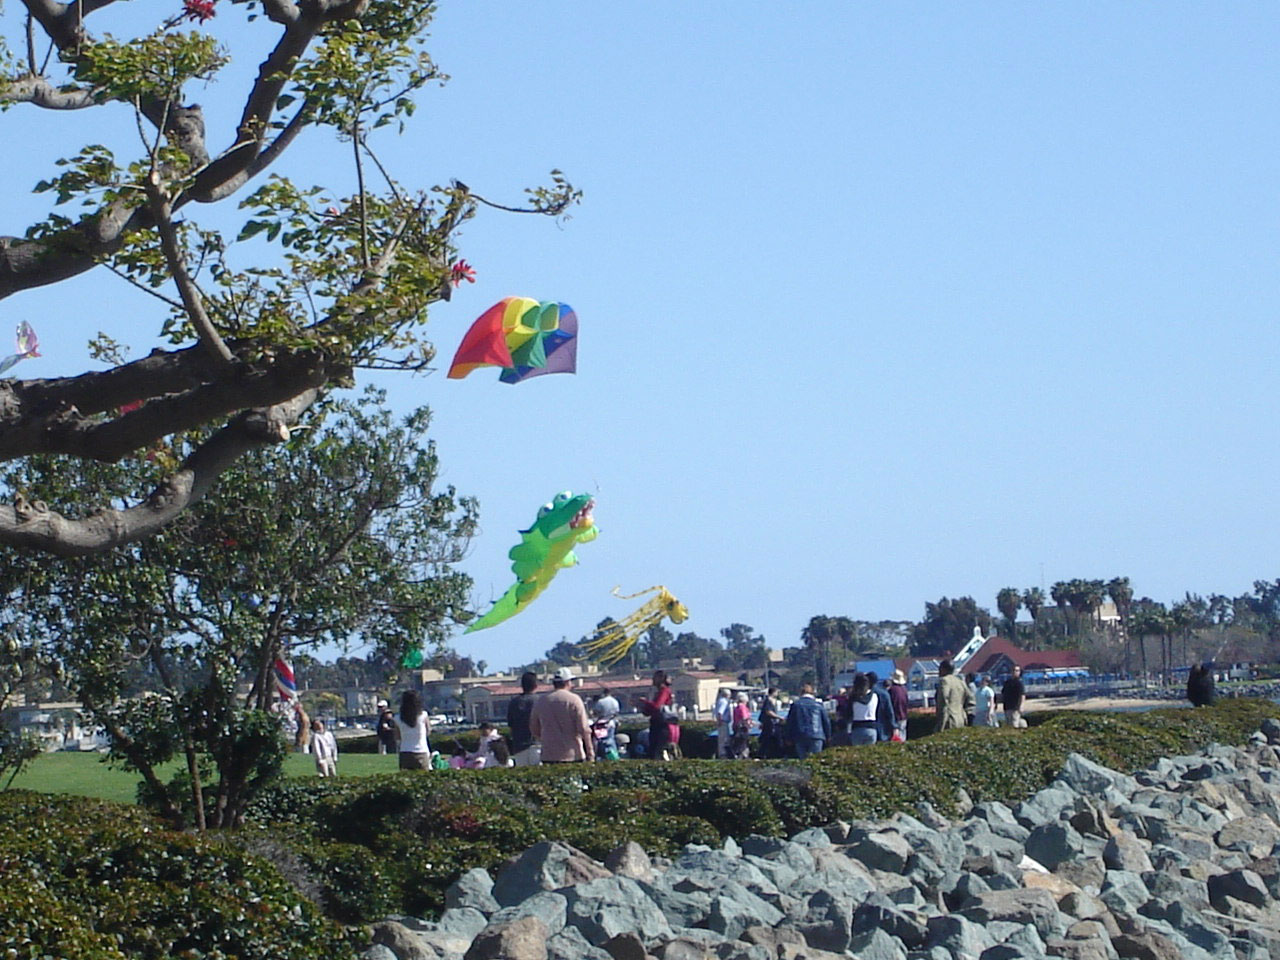 kites scenic tourism free photo